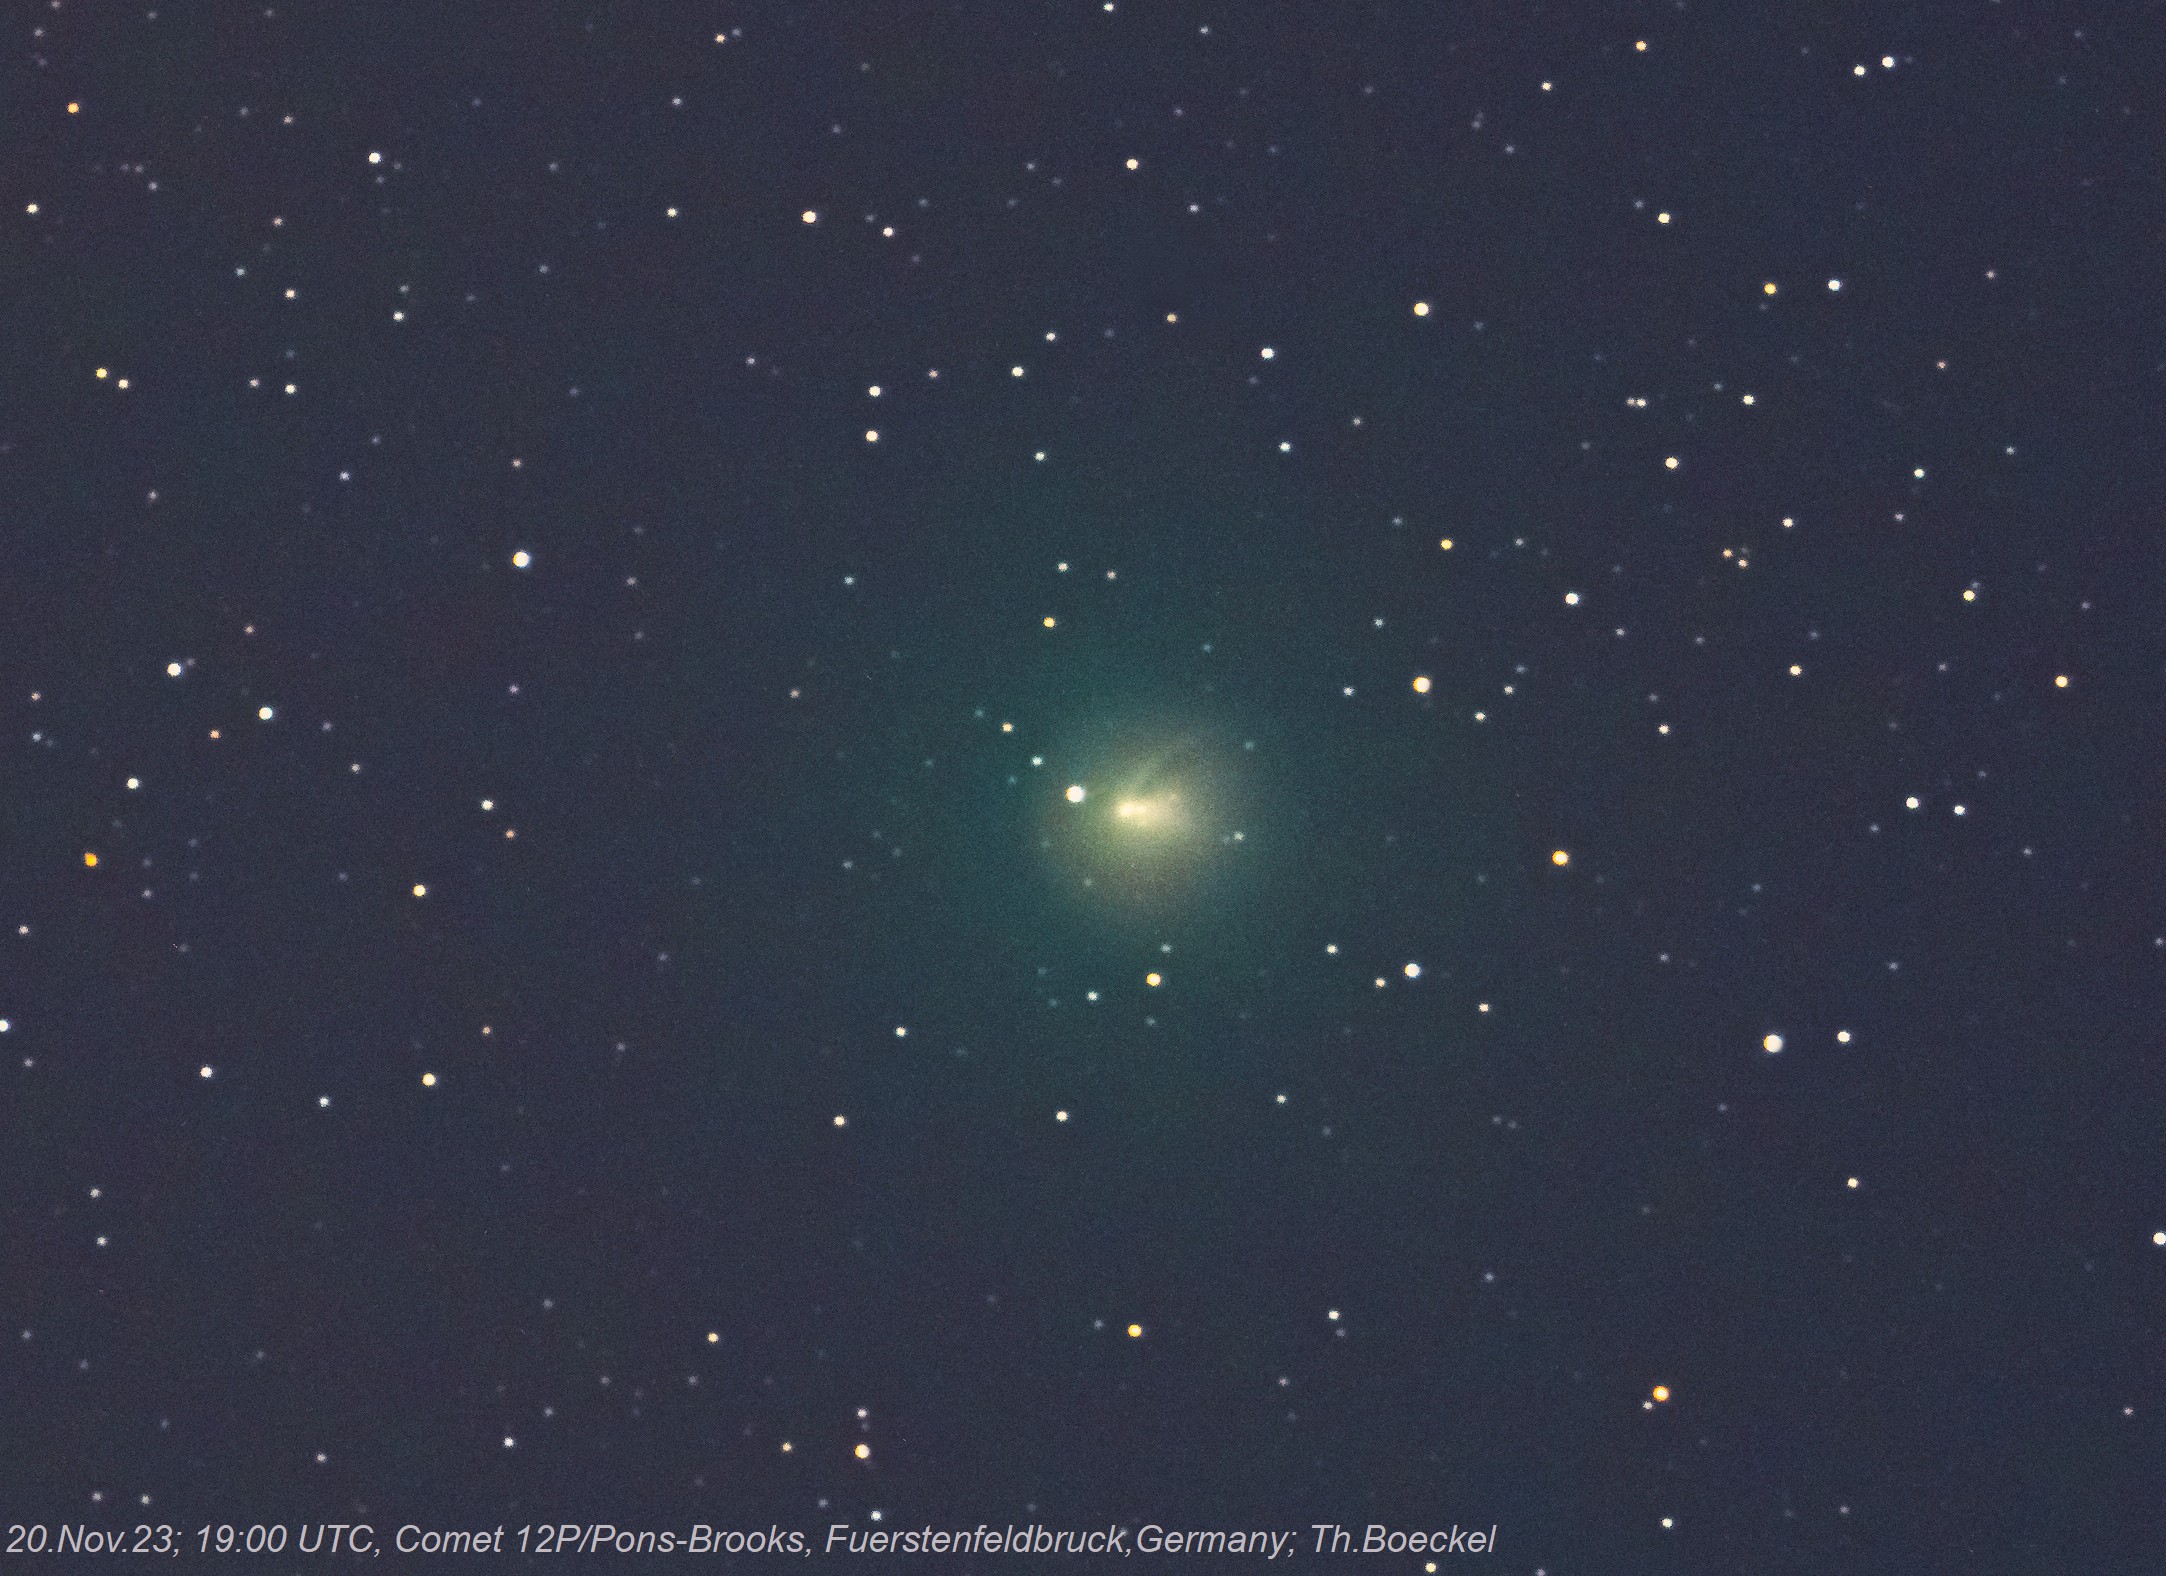 Comet 12P/Pons-Brooks by Boeckel